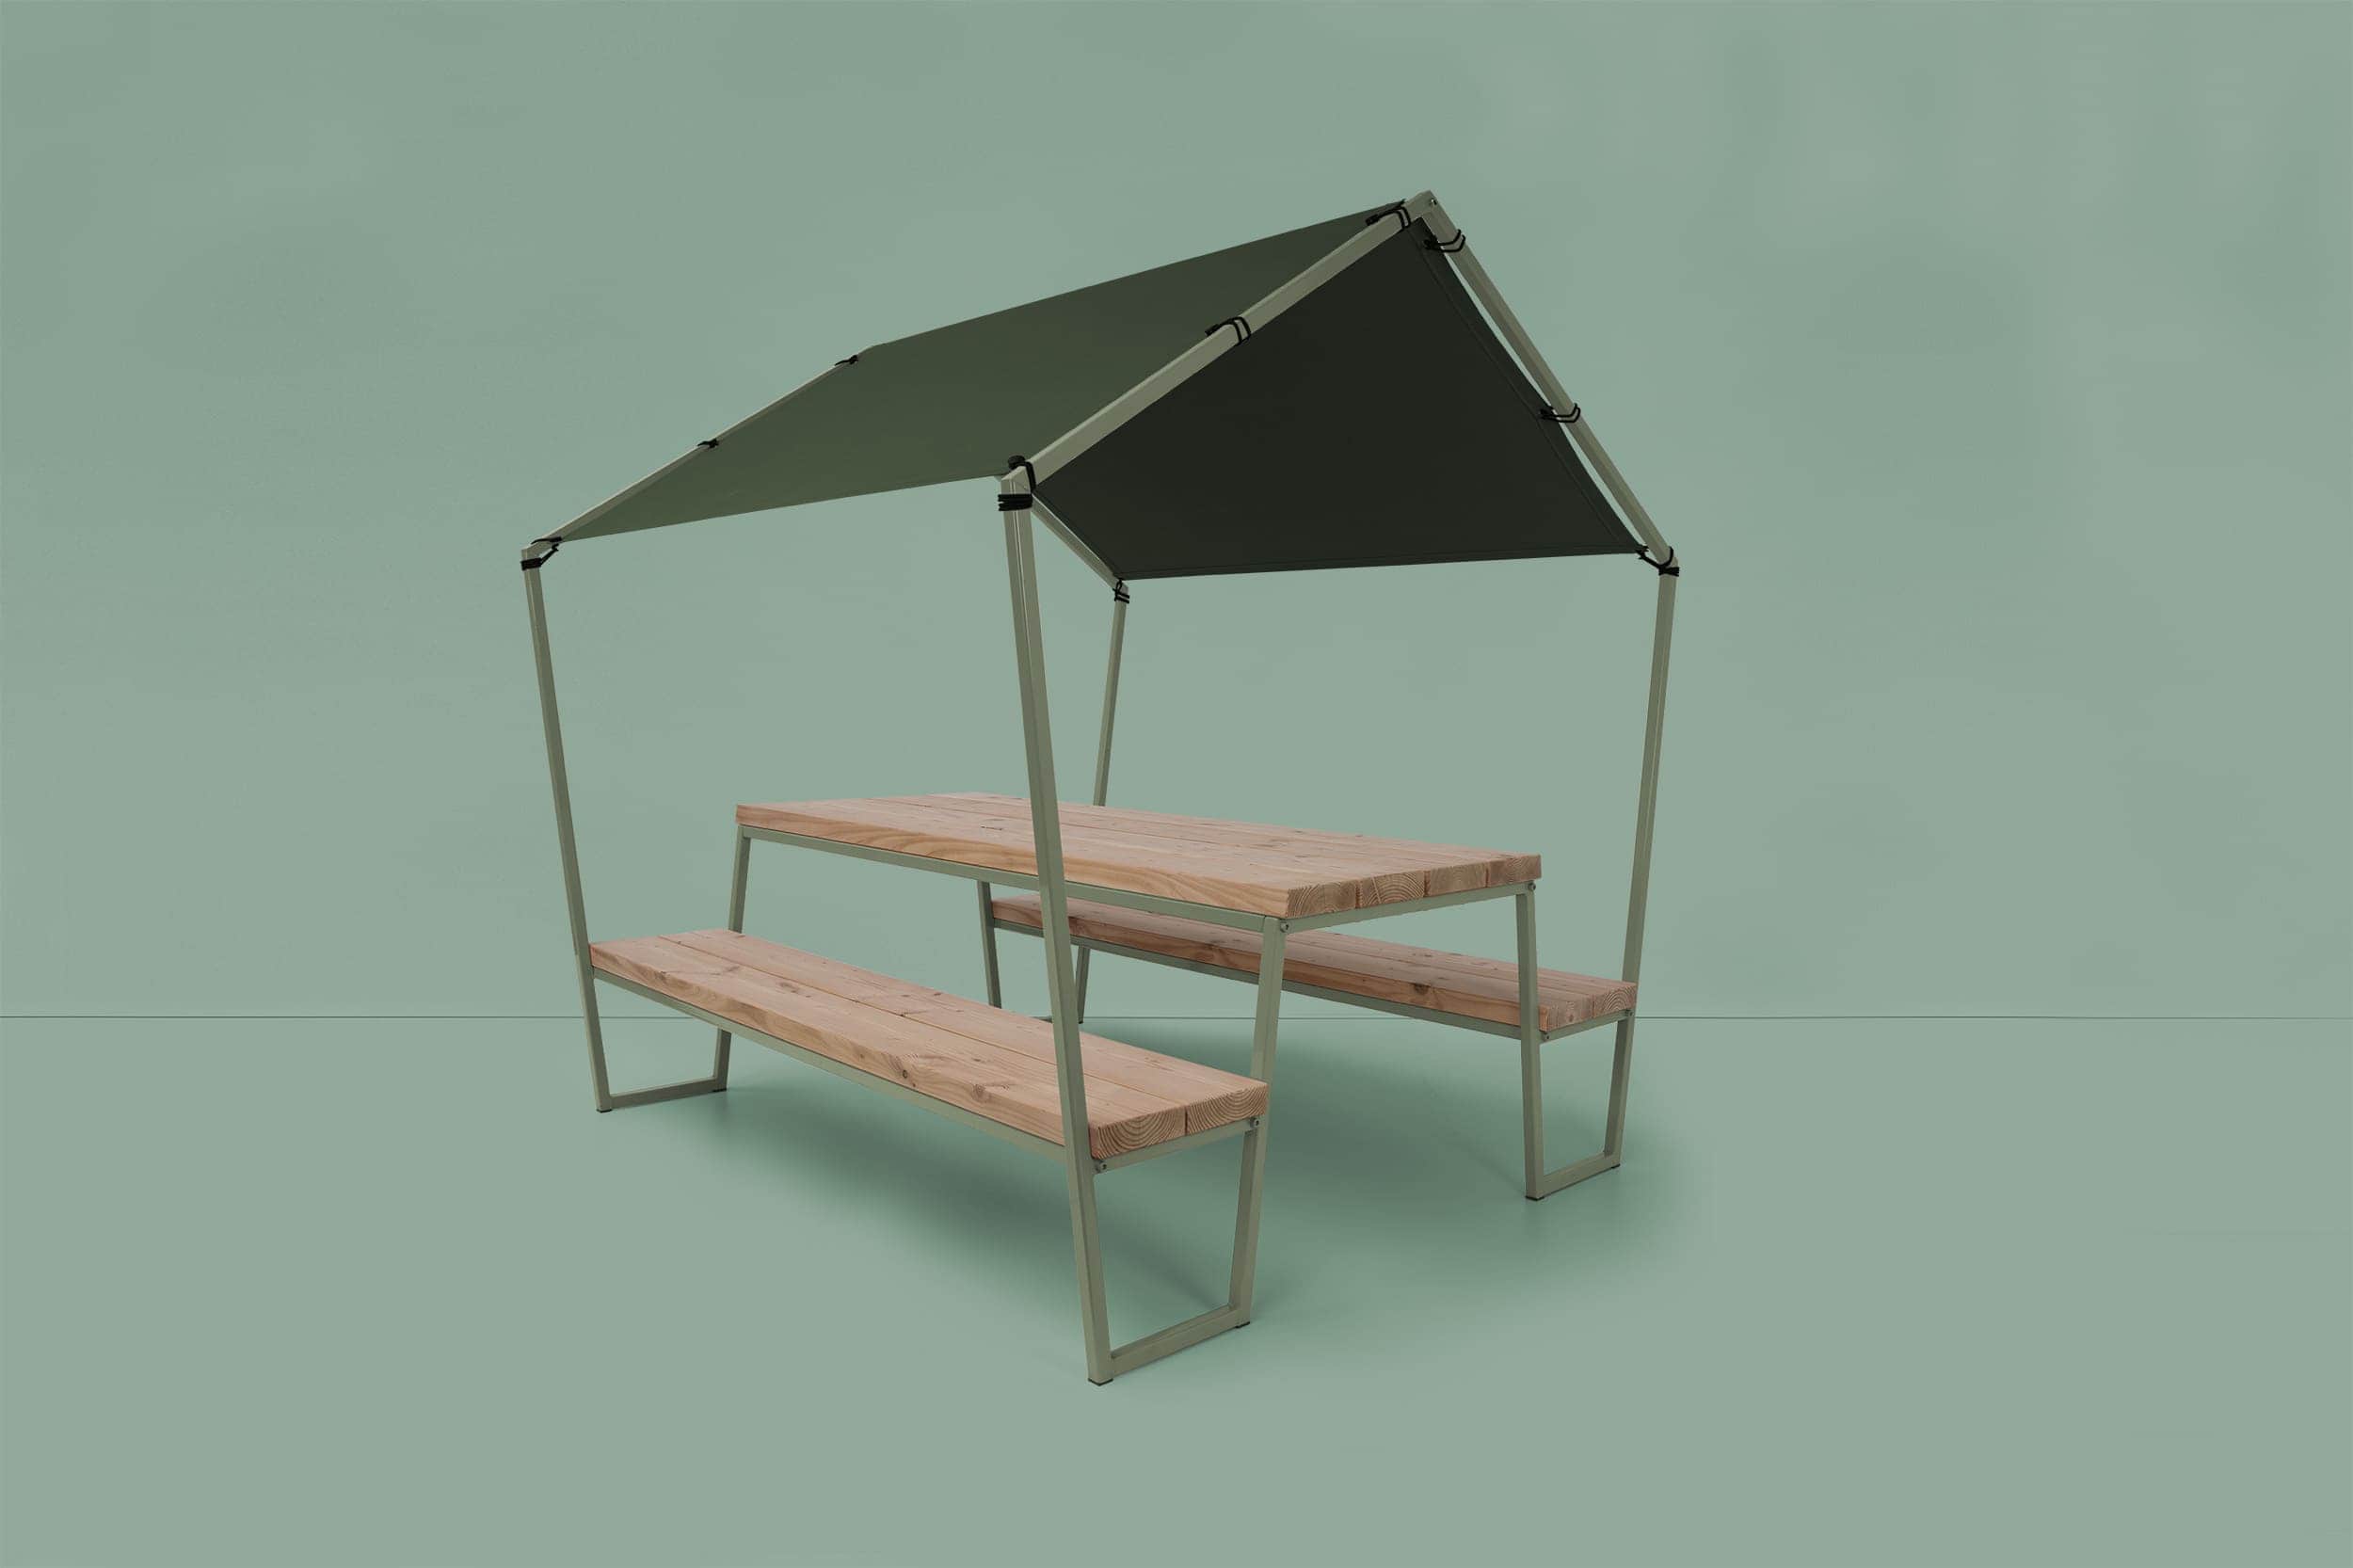 Picknicktafel met tentdoek er overheen in de vorm van een huisje.